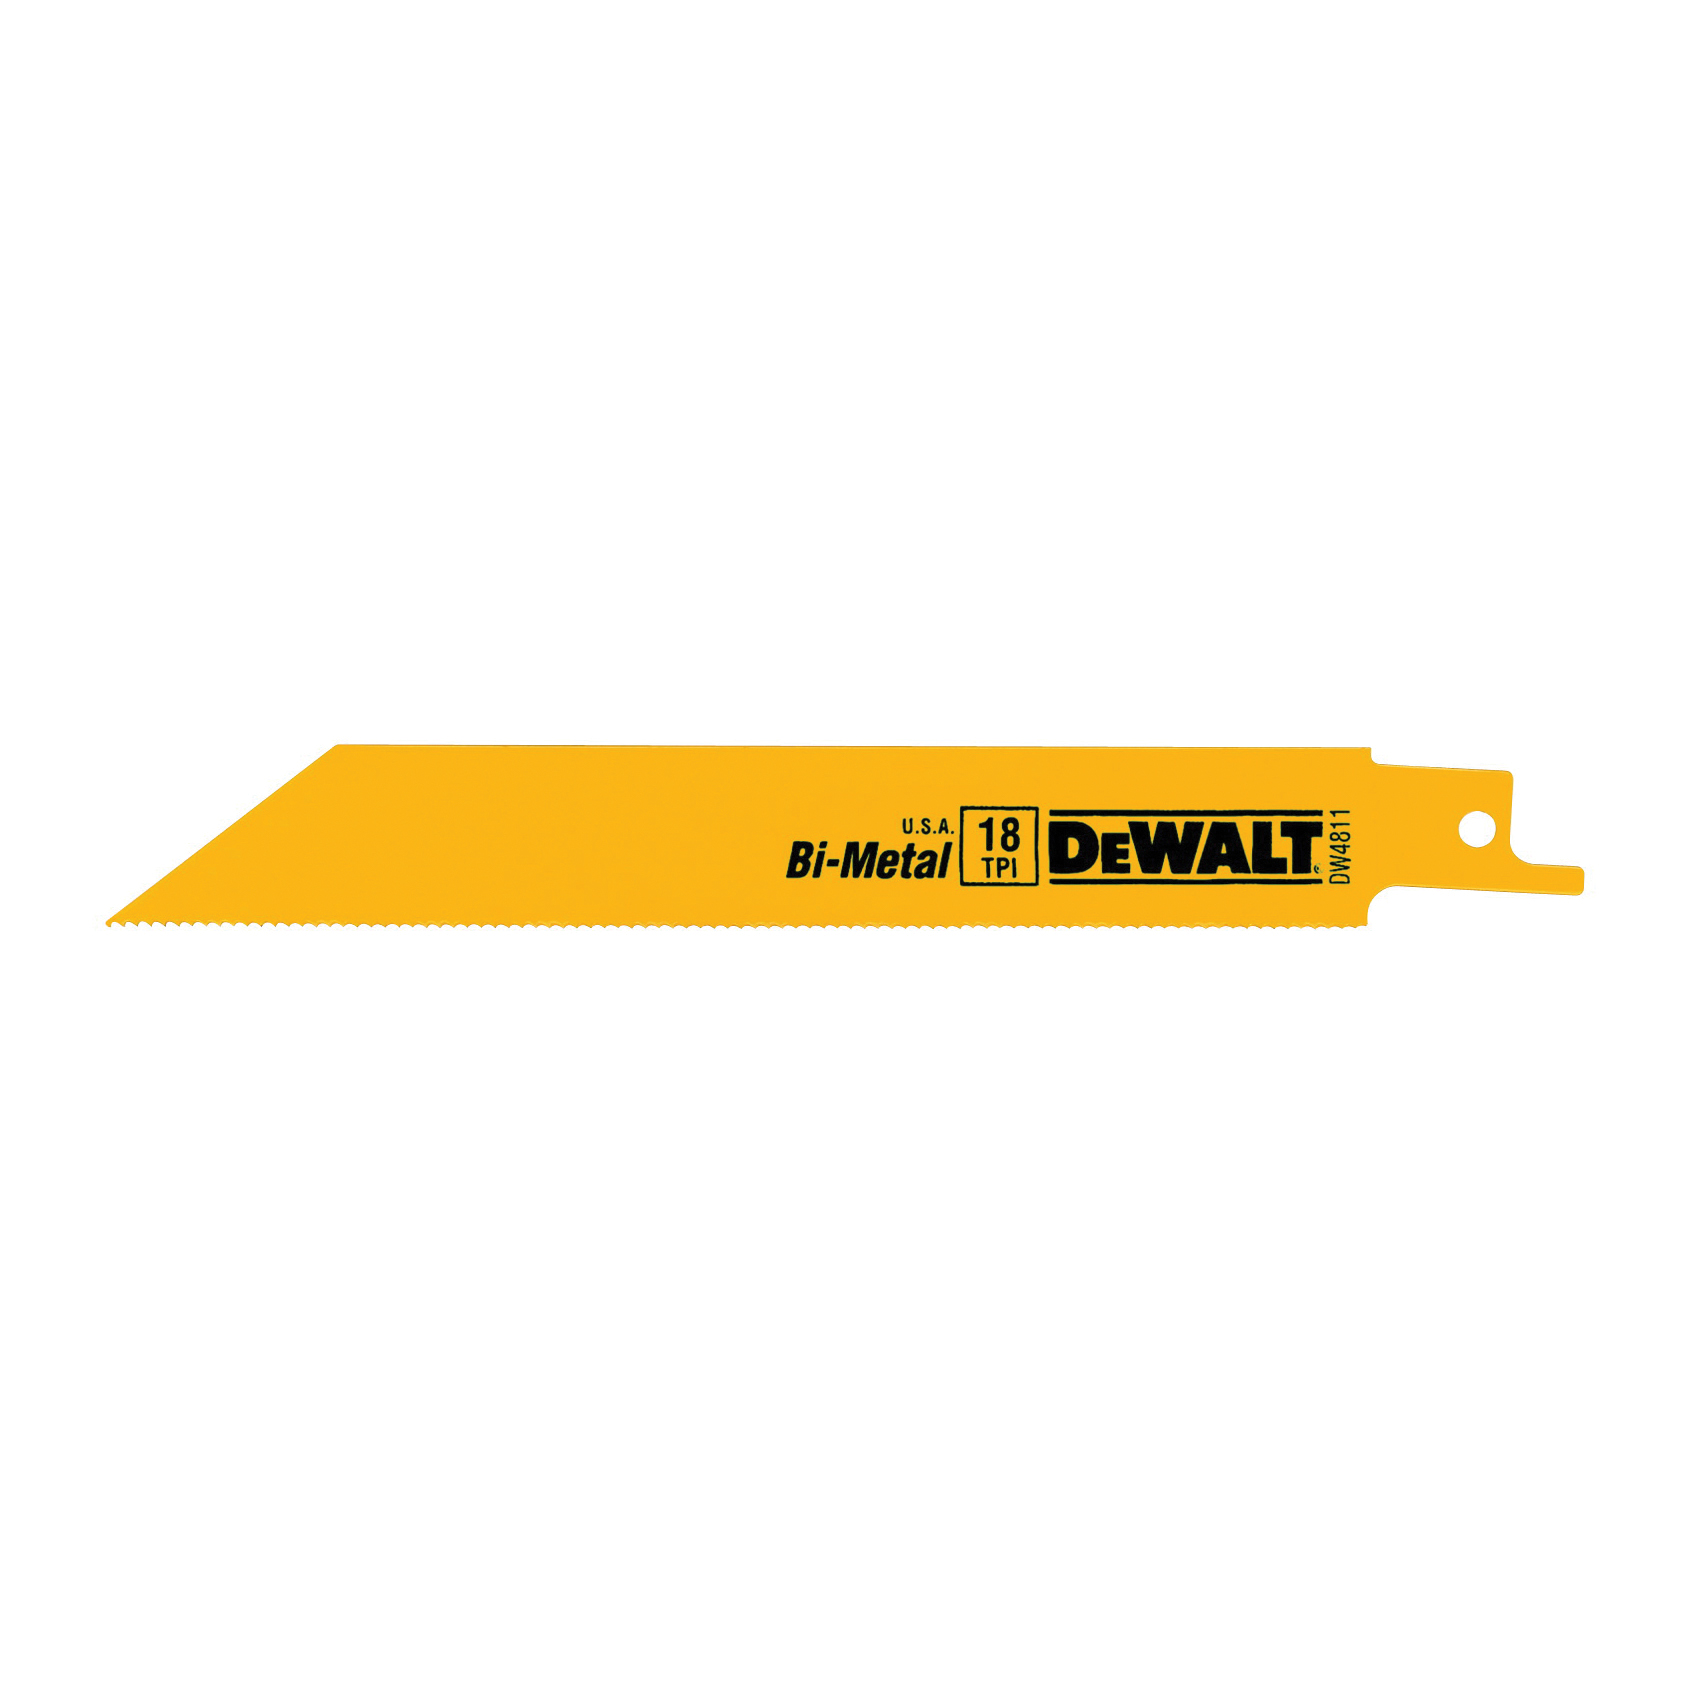 DeWALT DW4811B25 Reciprocating Saw Blade, 3/4 in W, 6 in L, 18 TPI